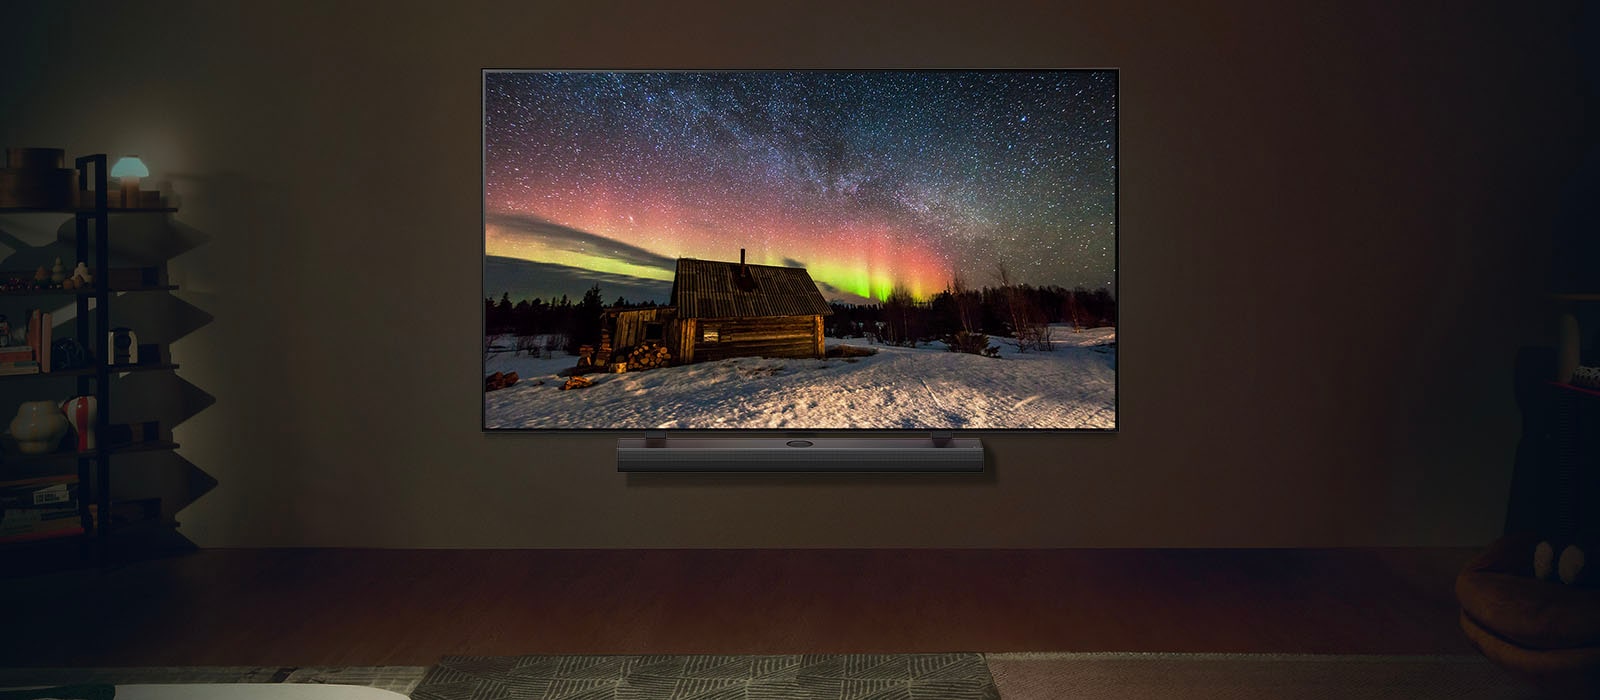 LG TV a LG Soundbar v modernom obytnom priestore v noci. Na obrazovke sa zobrazuje polárna žiara s ideálnou úrovňou jasu.